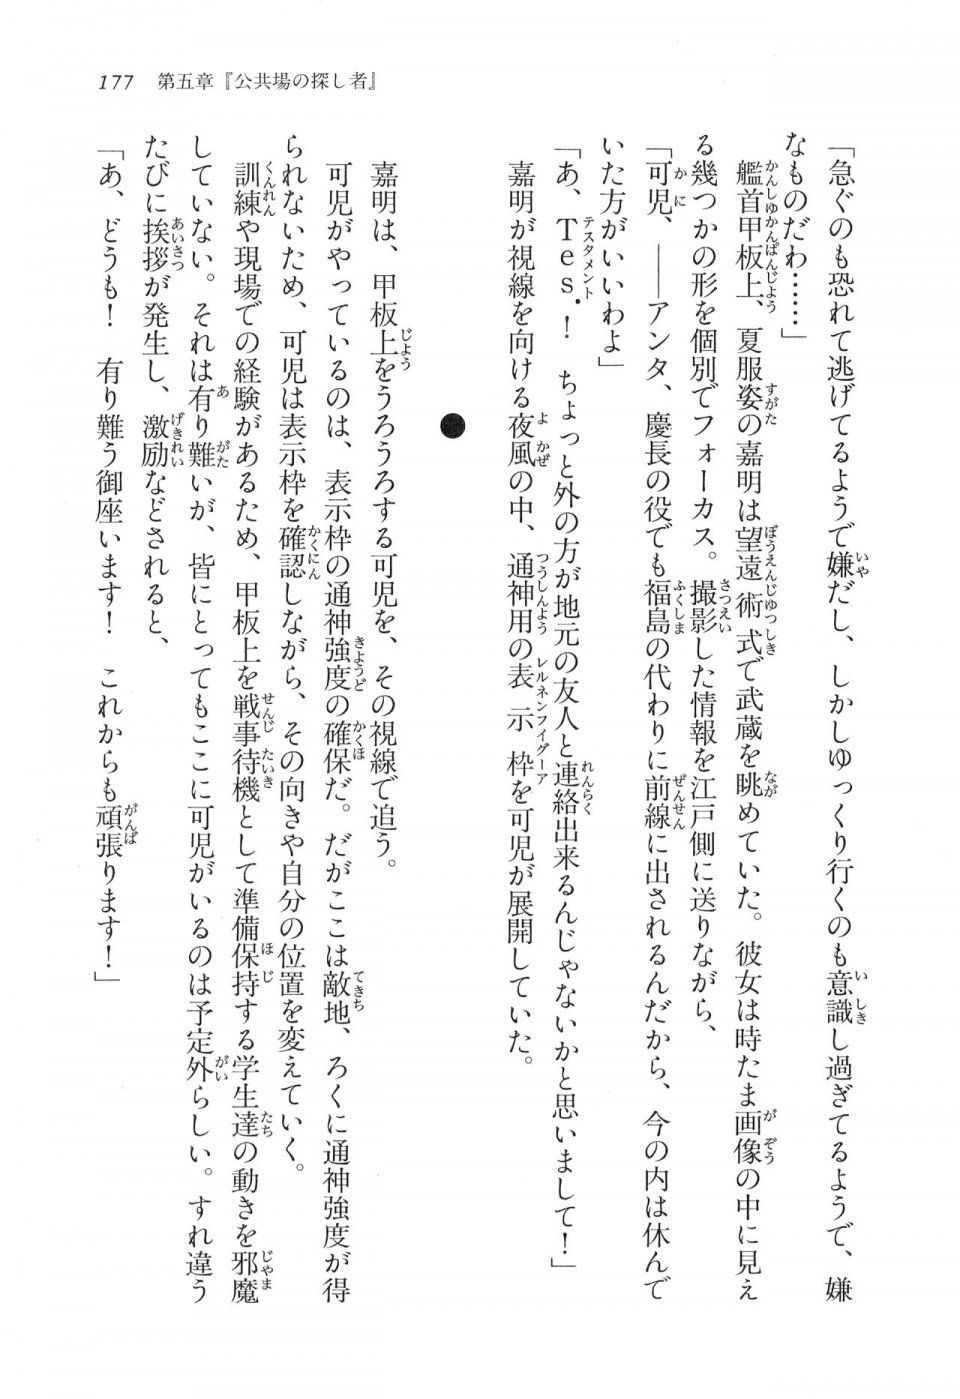 Kyoukai Senjou no Horizon LN Vol 16(7A) - Photo #177